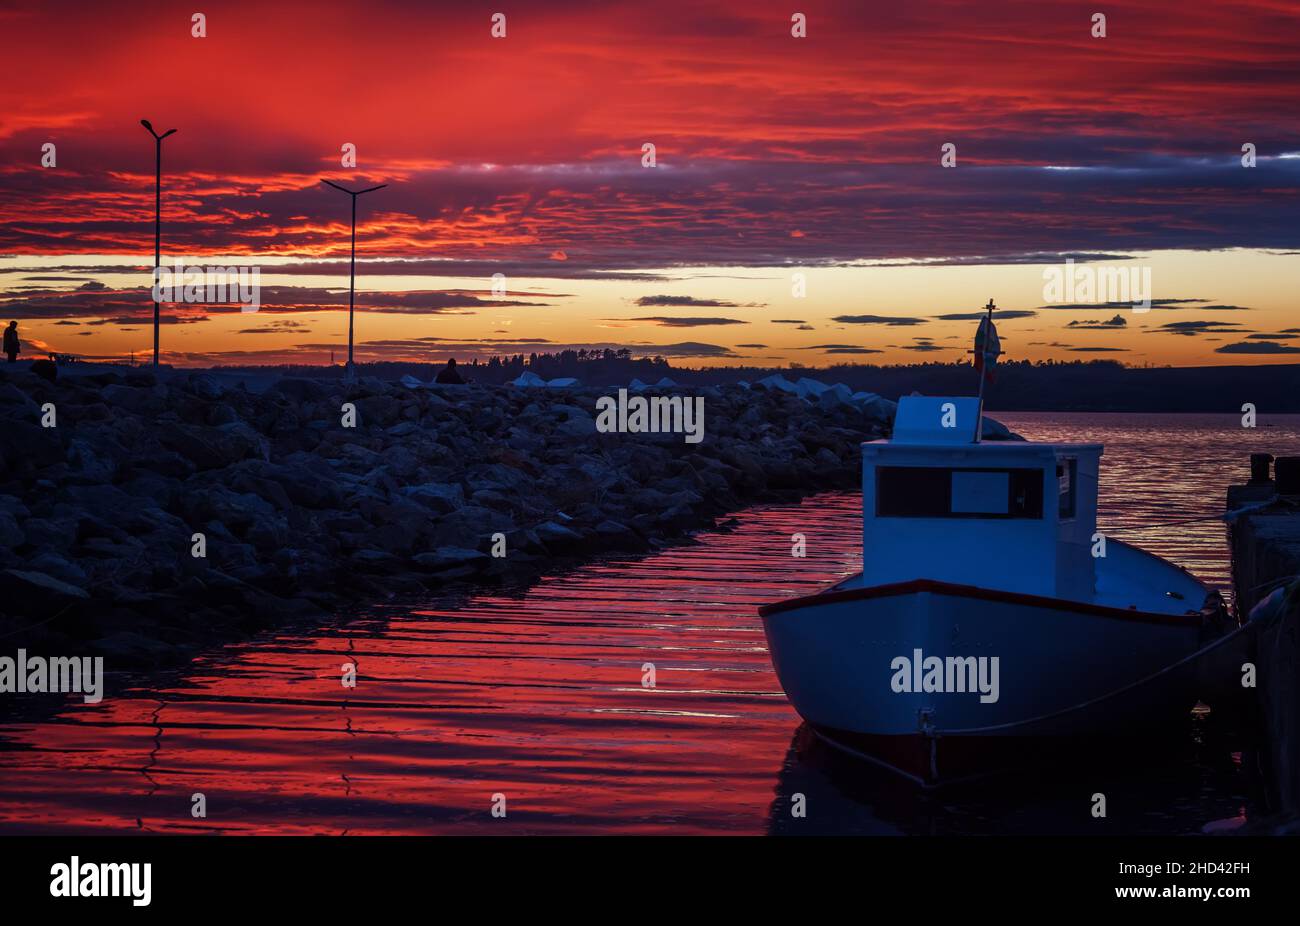 Bateau de pêche au coucher du soleil. Coucher de soleil sur le lac vue sur la silhouette du bateau. Burgas Bay. Bulgarie. Banque D'Images